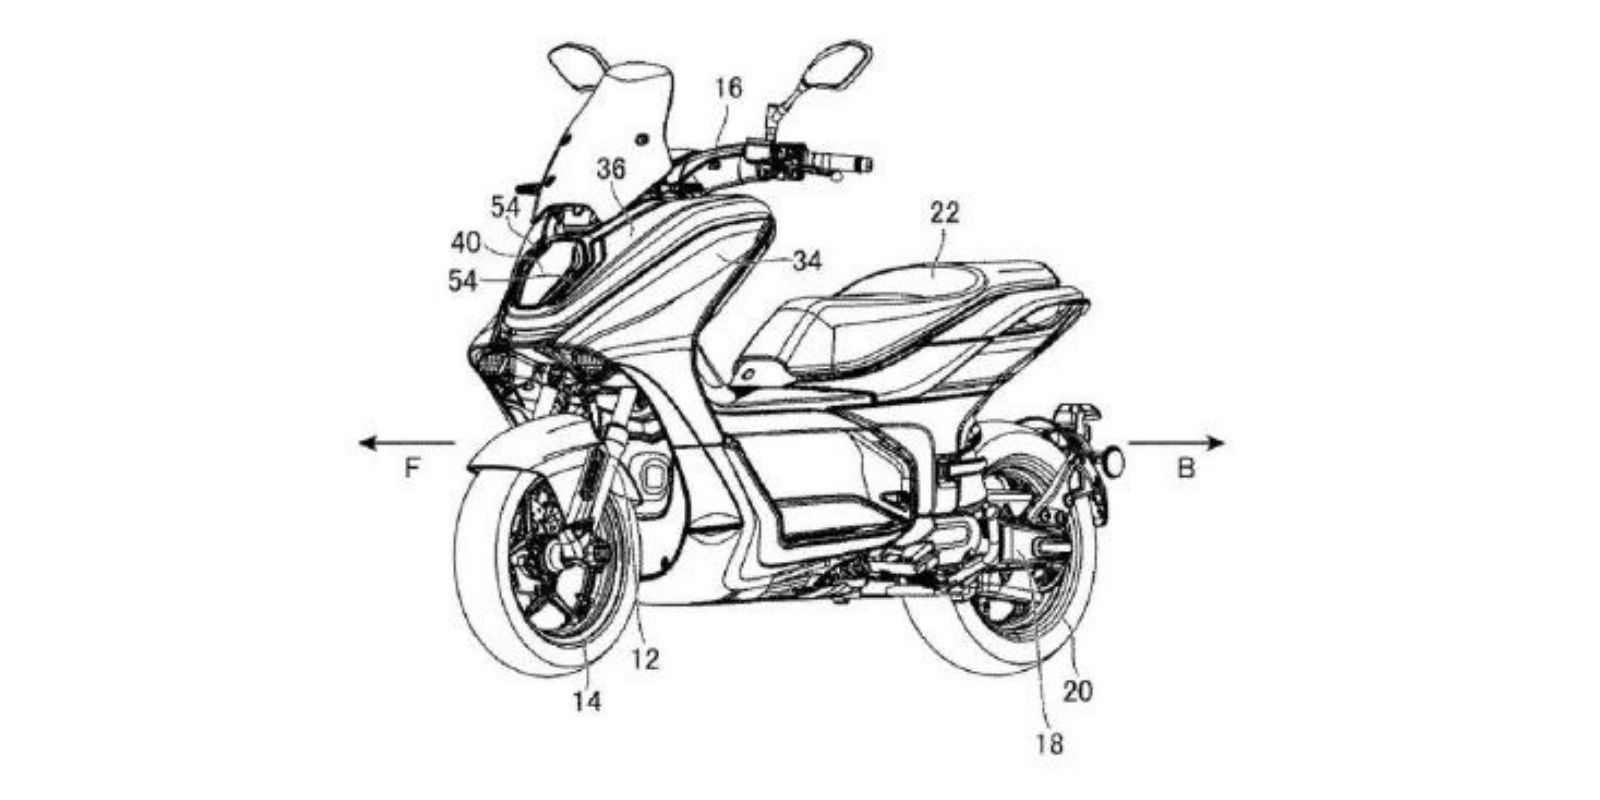 Yamaha E01 Patent